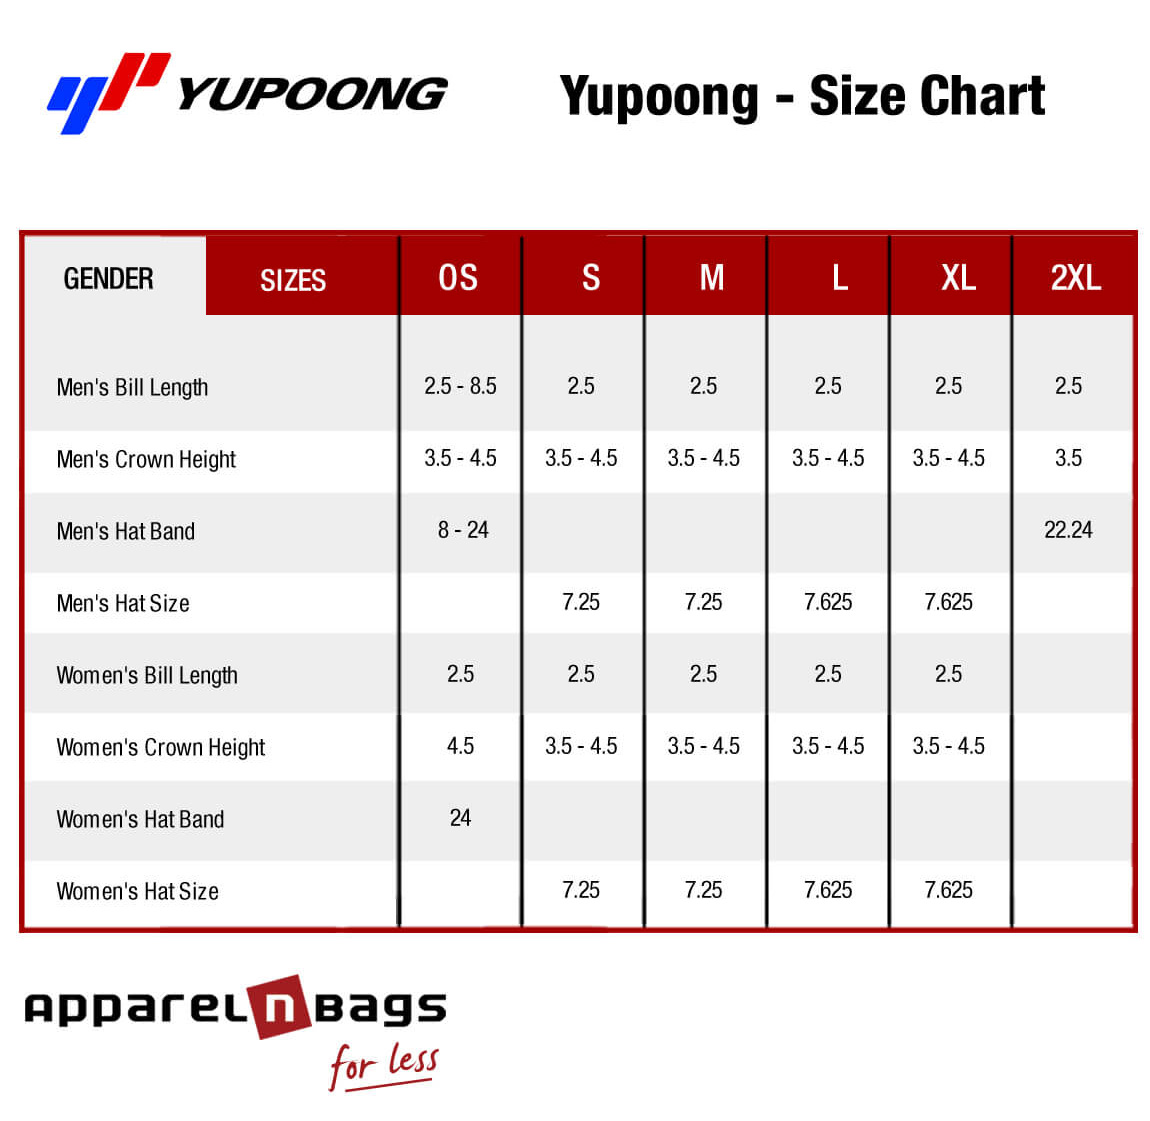 Yupoong - Size Chart